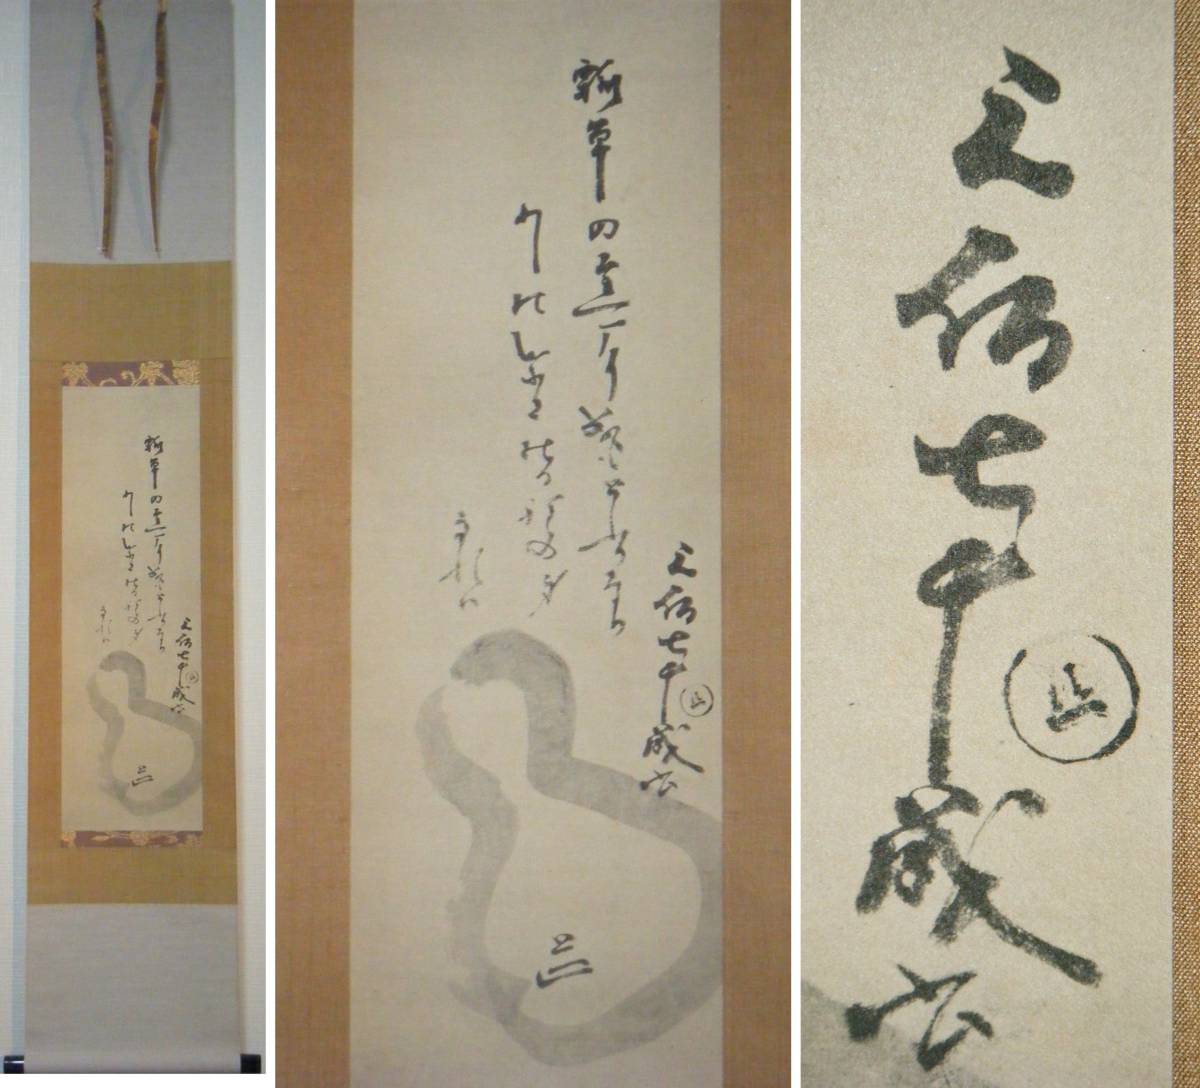 工芸夏目漱石・棕櫚竹や月に背いて影二本／夏目漱石画賛幅複製